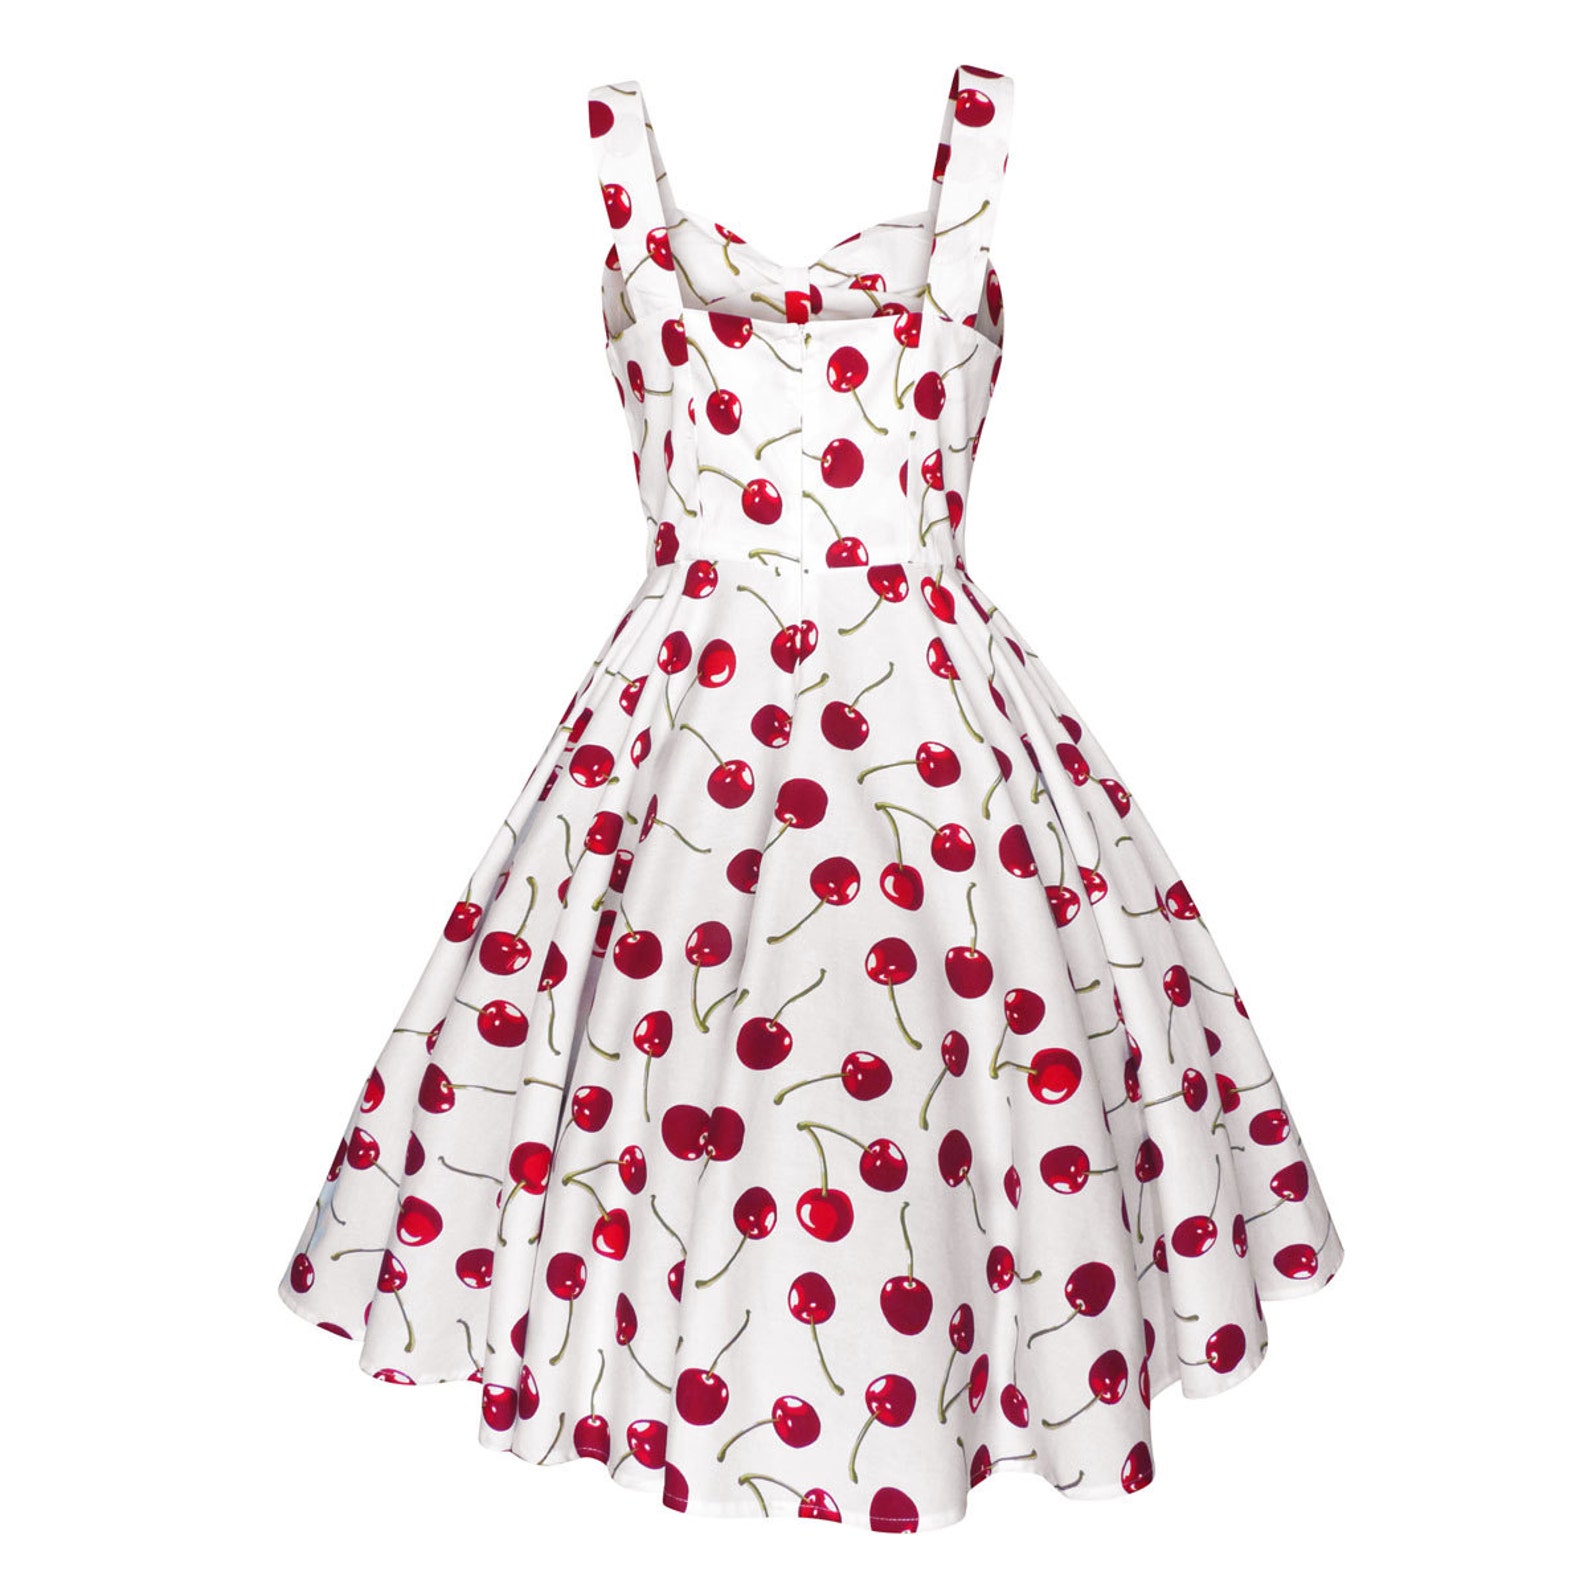 Red Cherry Dress Cherries Dress Summer Dress Rockabilly - Etsy